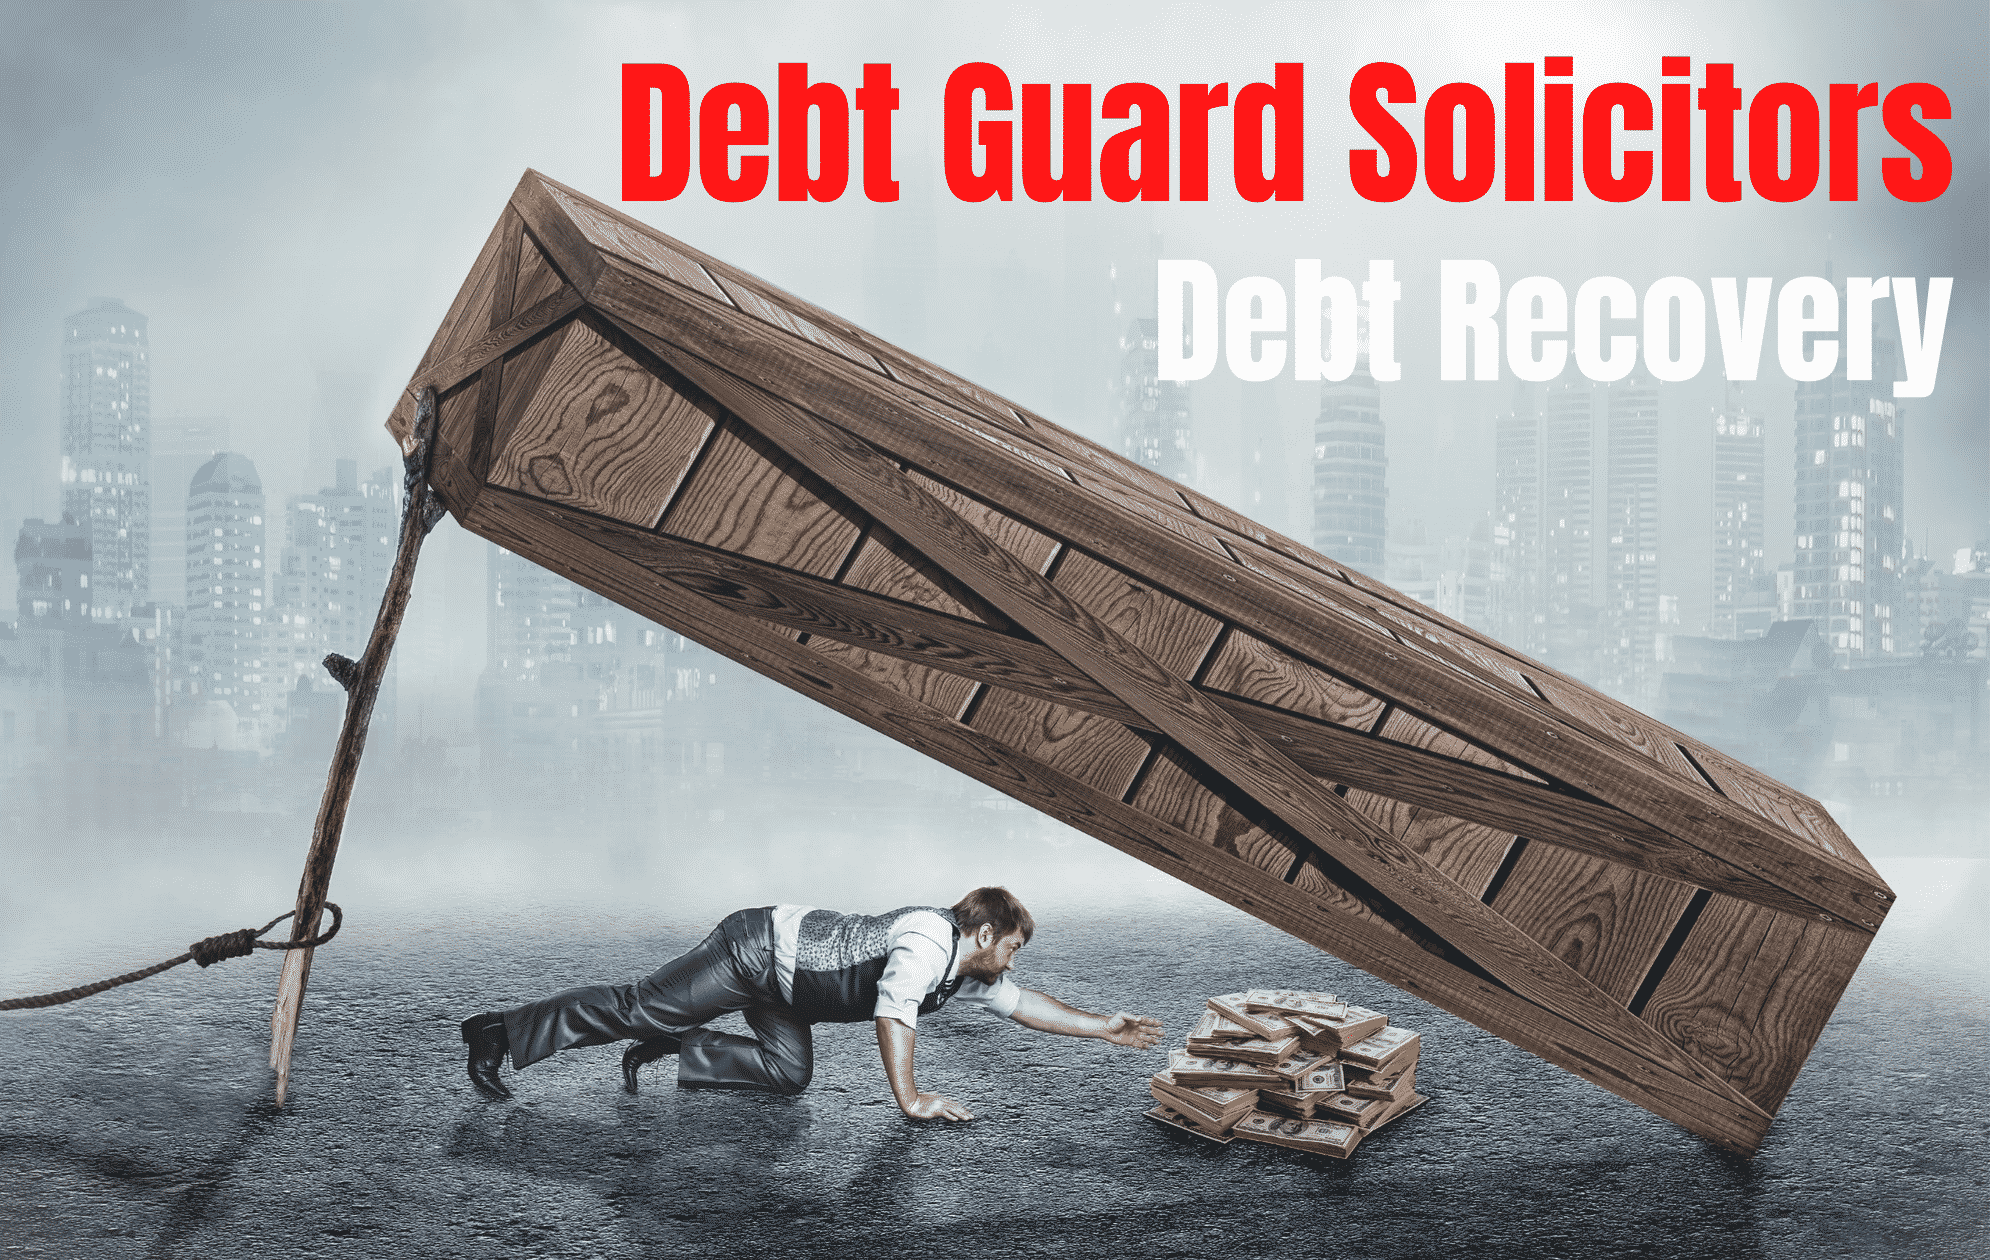 debt-guard-solicitors